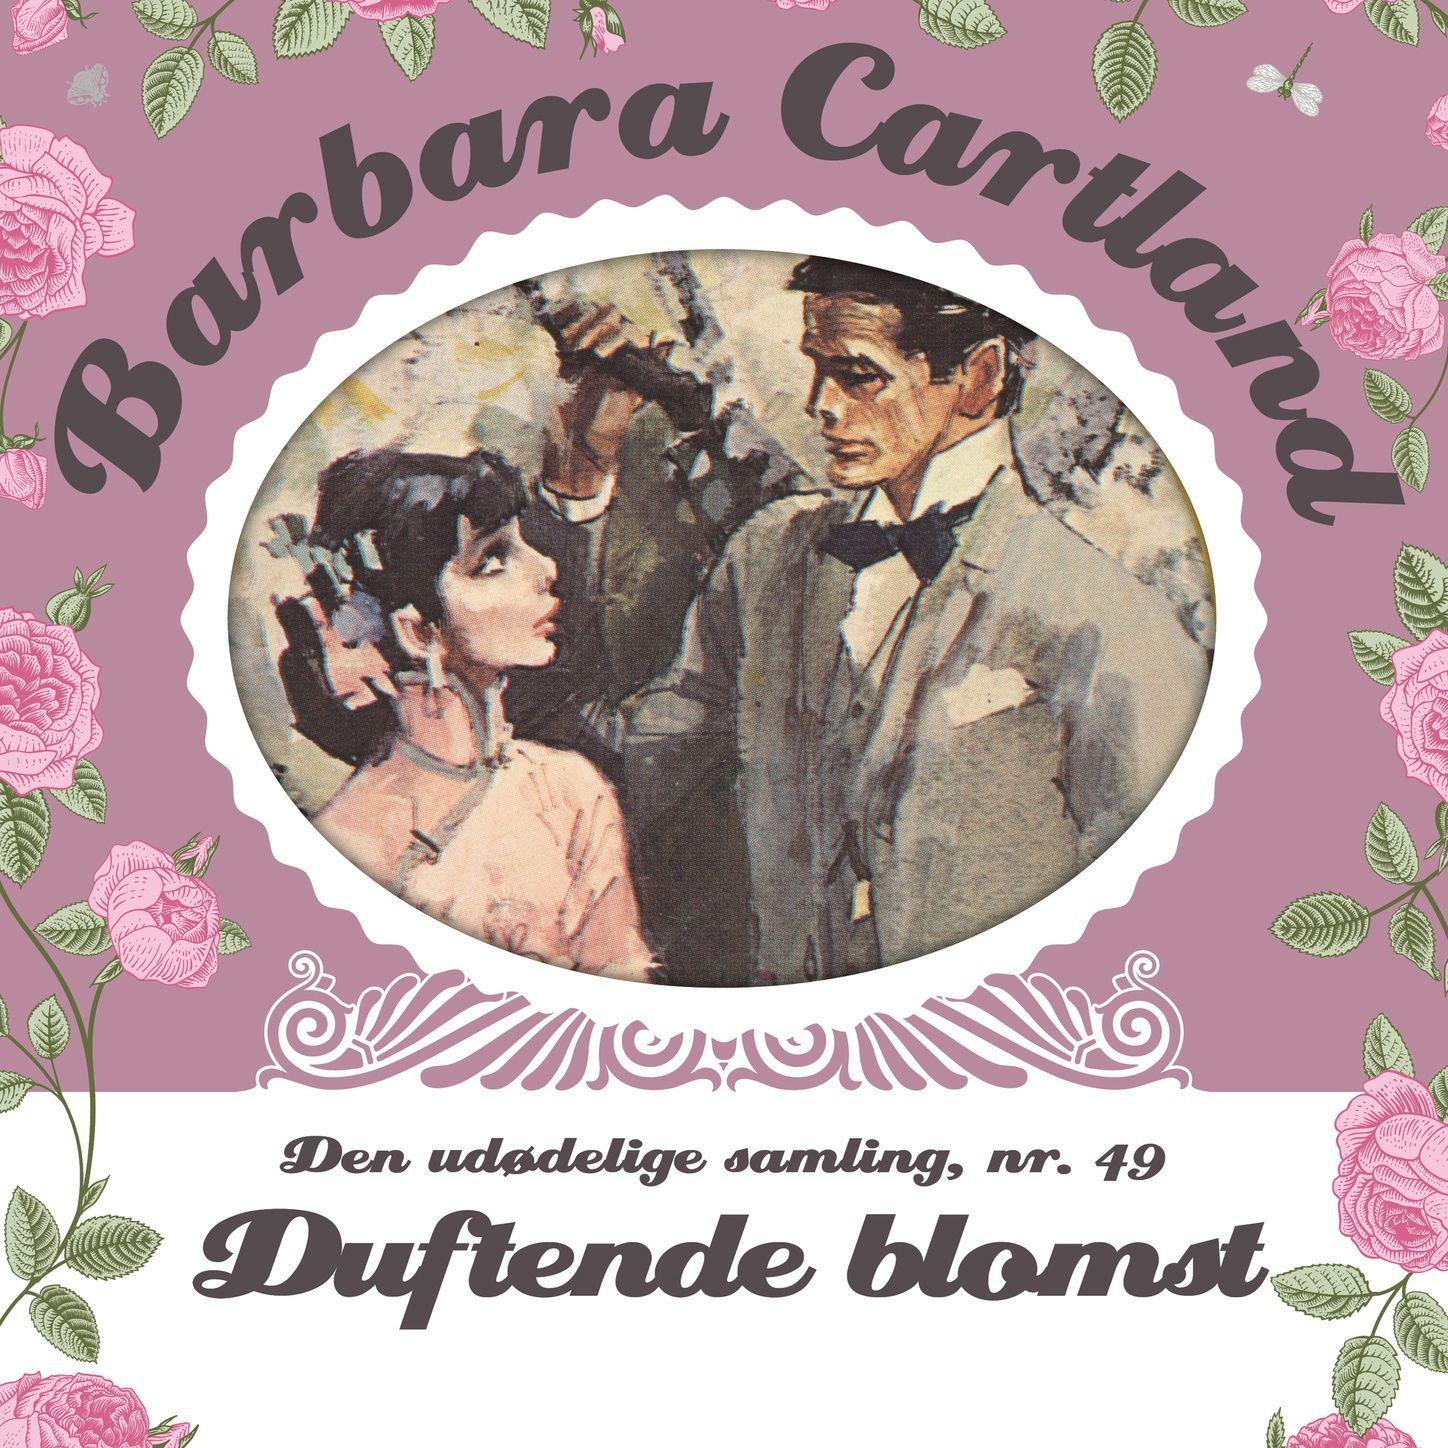 Duftende blomst  Barbara Cartland  Den ud delige samling 49, del012